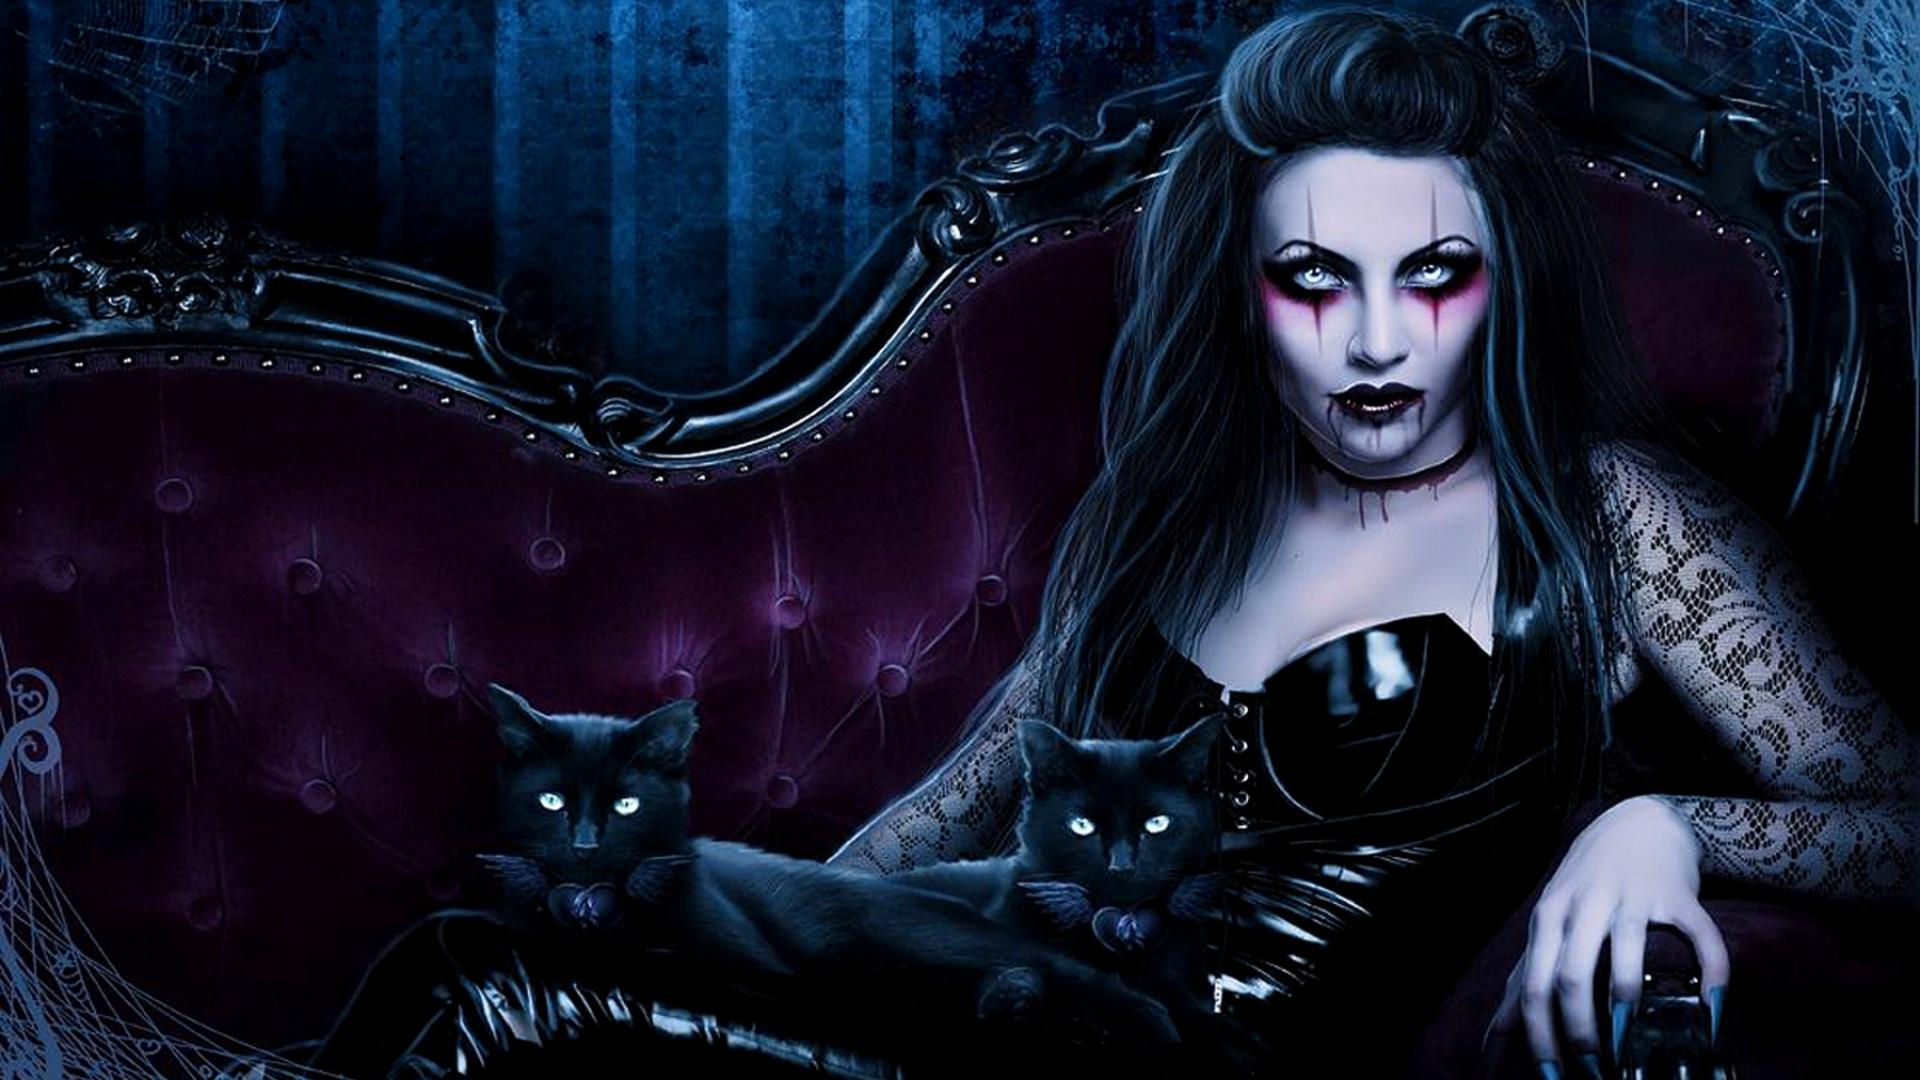 Dark fantasy gothic vampire evil horror cats art wallpaper 1920x1080